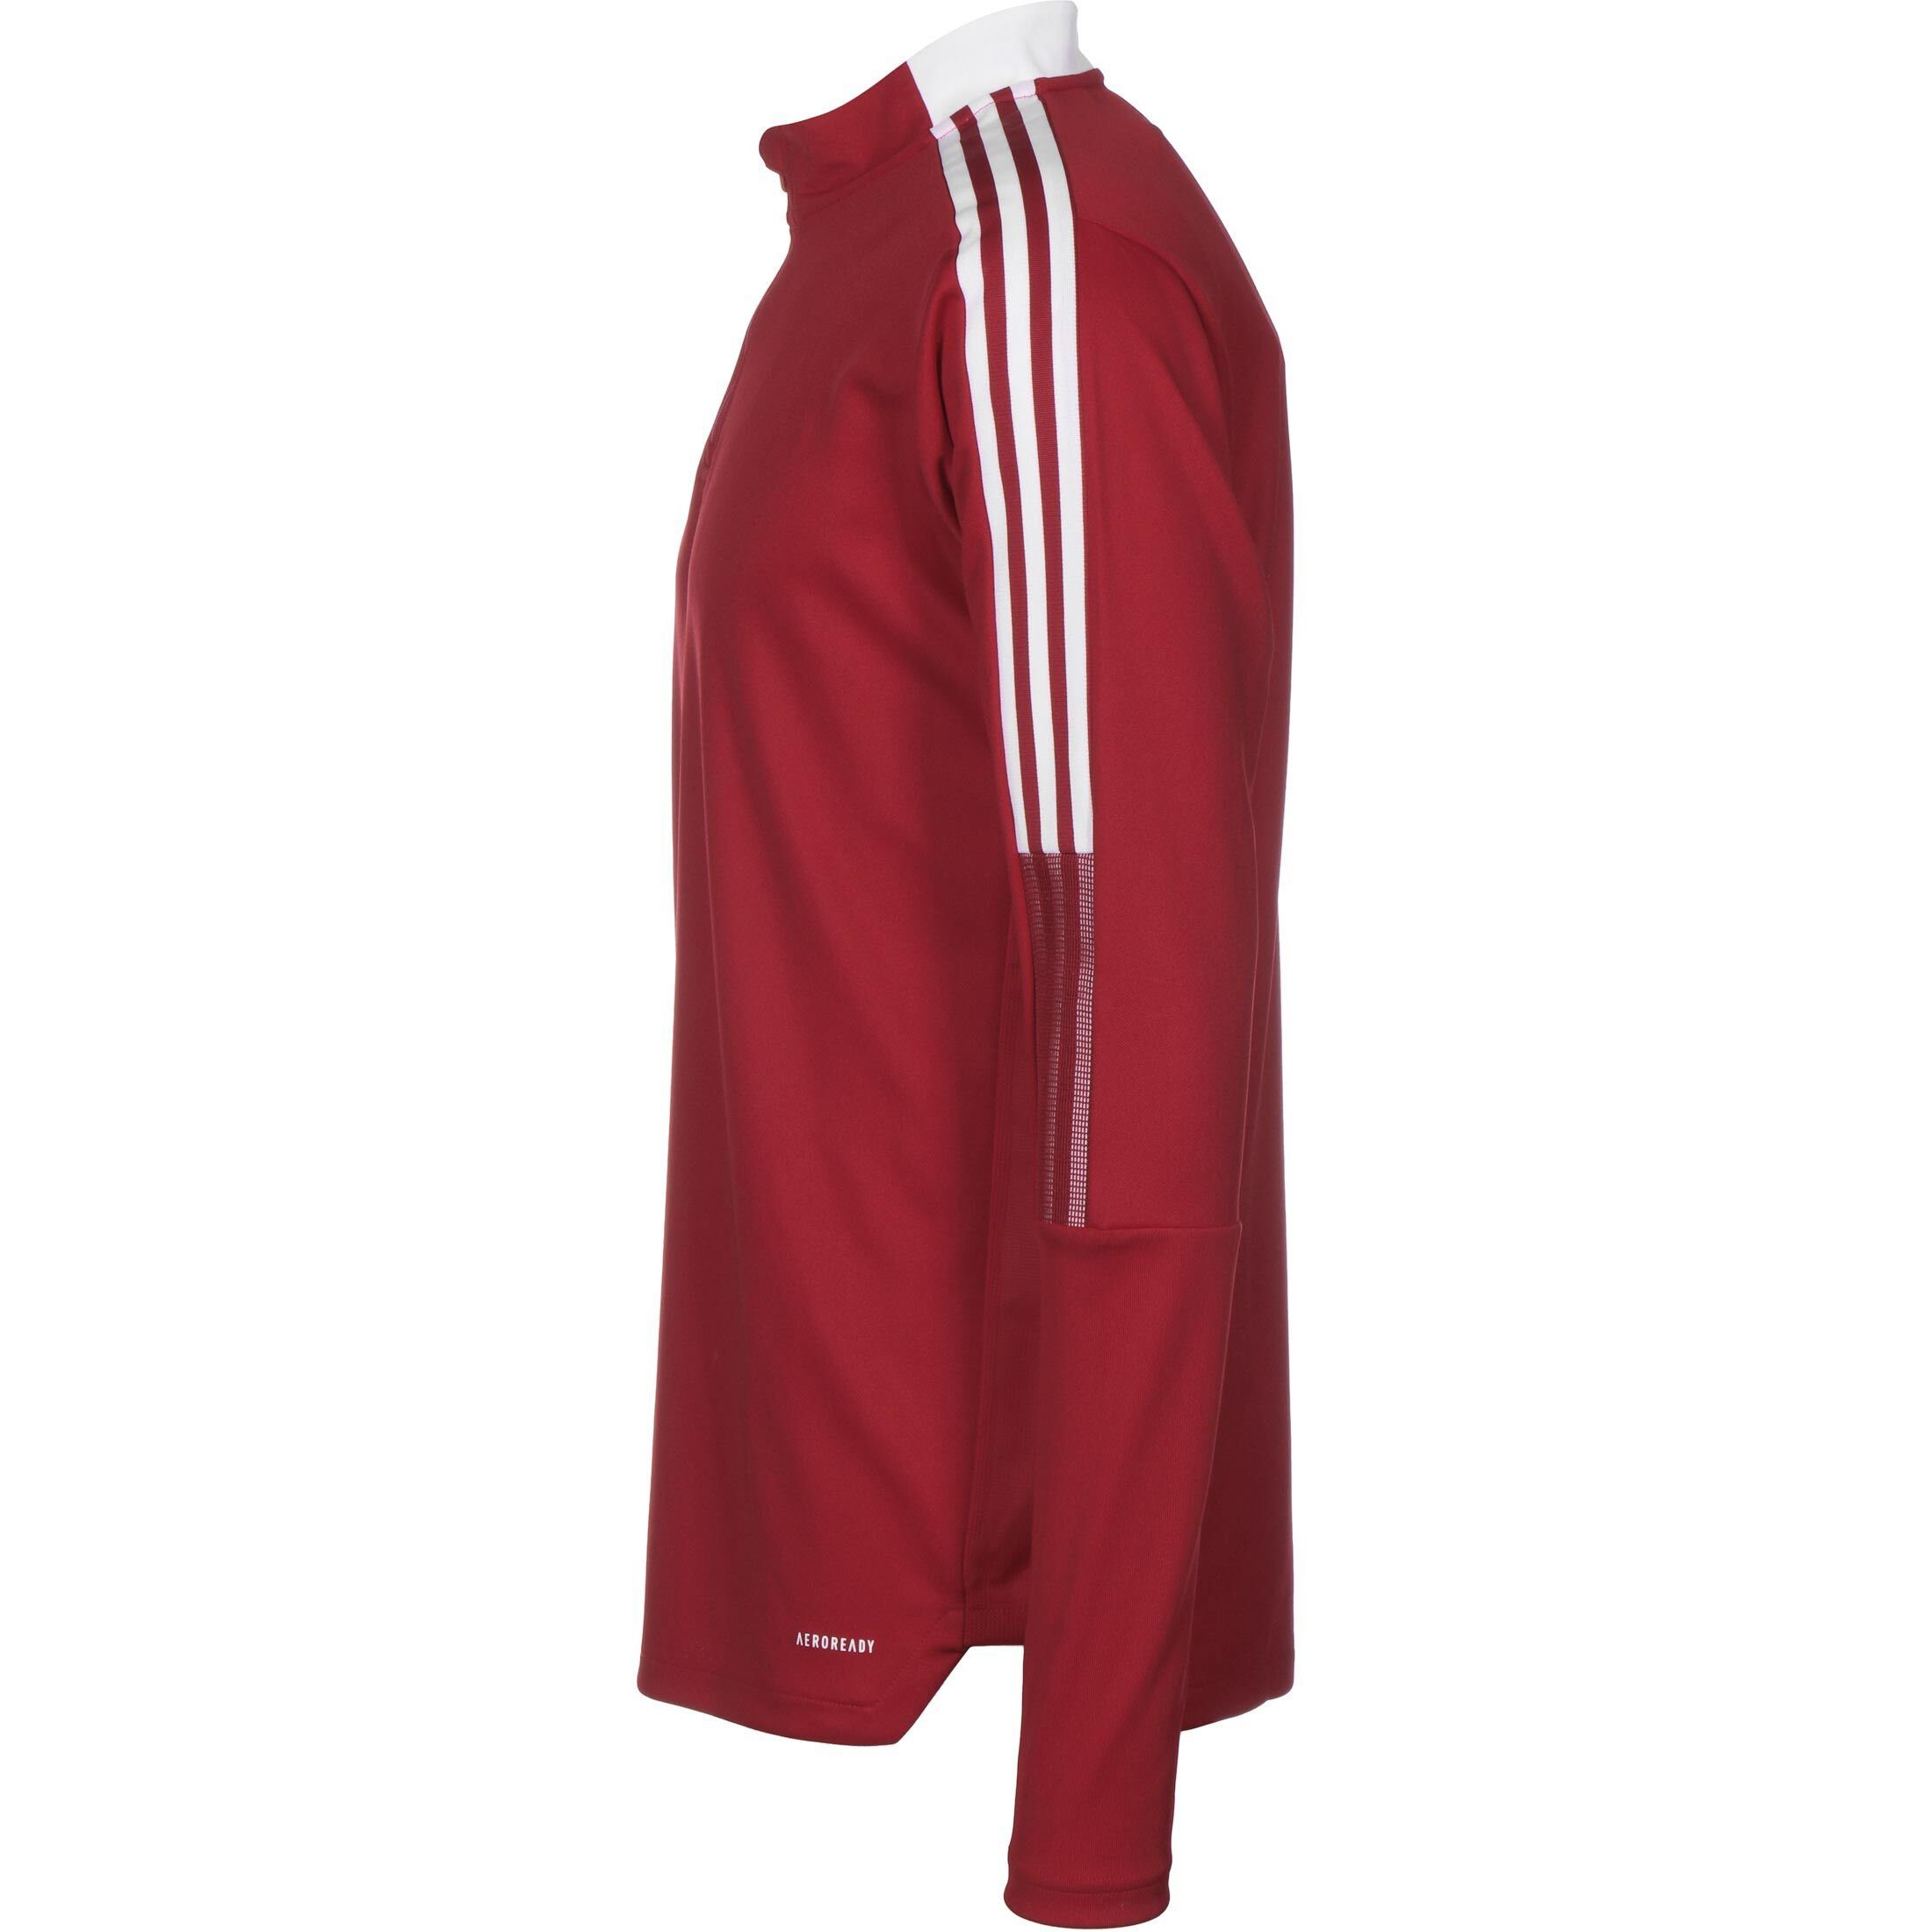 Trainingssweat weiß Sweatshirt Performance 21 adidas Herren Tiro / rot